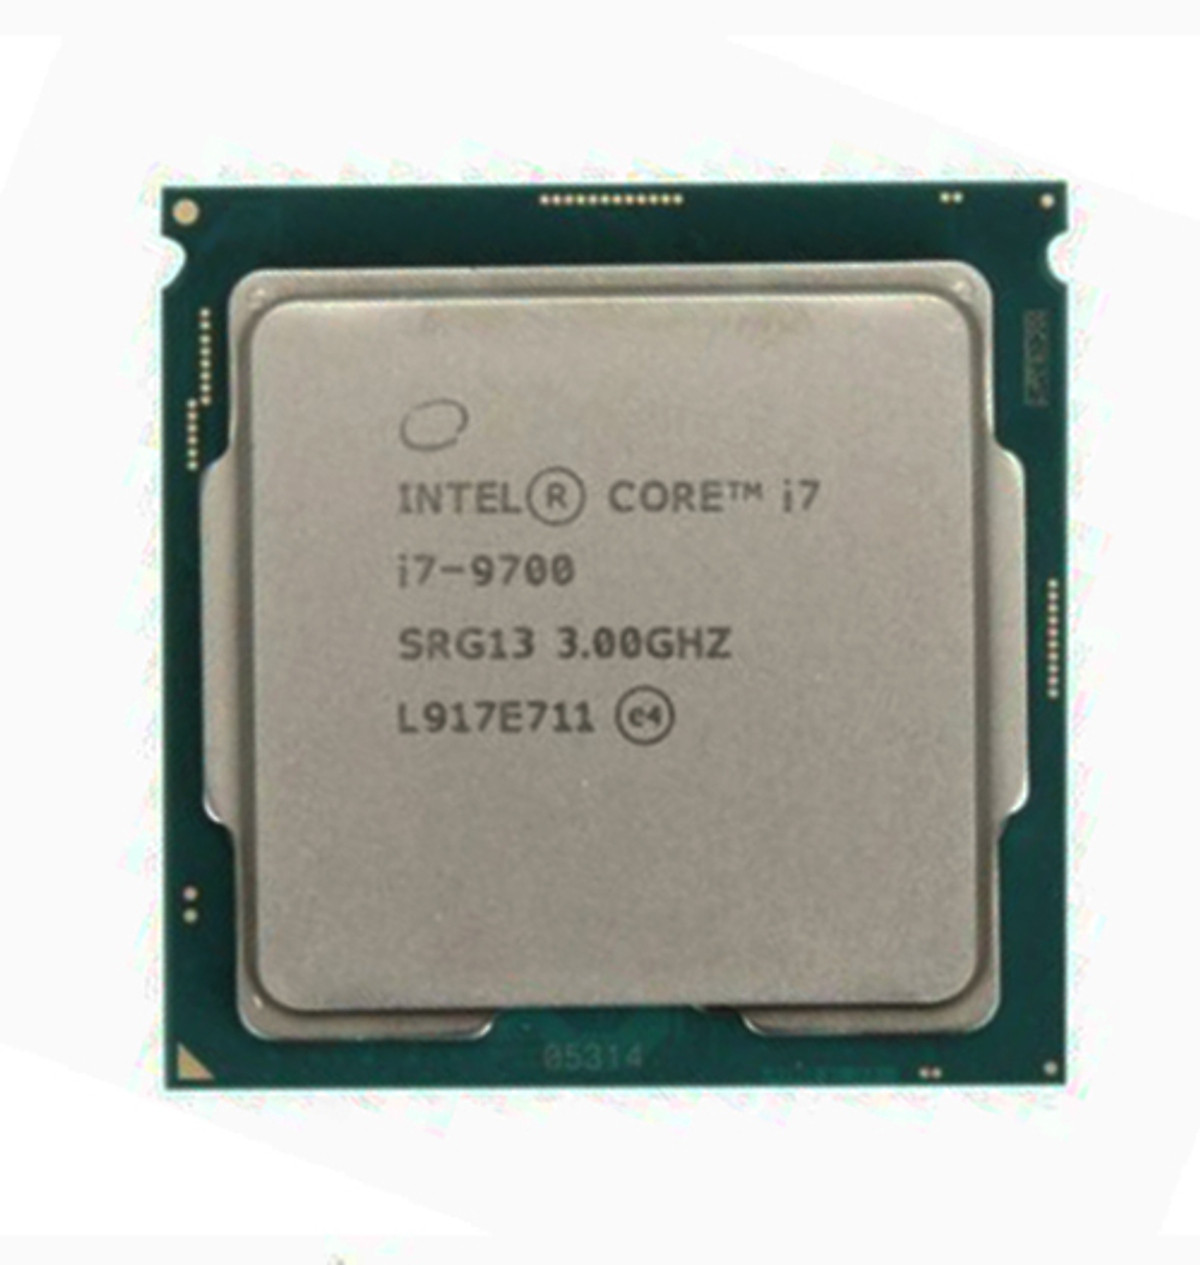 Bộ Vi Xử Lý CPU Intel Core I7-9700 (3.00GHz, 12M, 8 Cores 8 Threads, Socket LGA1151-V2, Thế hệ 8) Tray chưa Fan - Hàng Chính Hãng